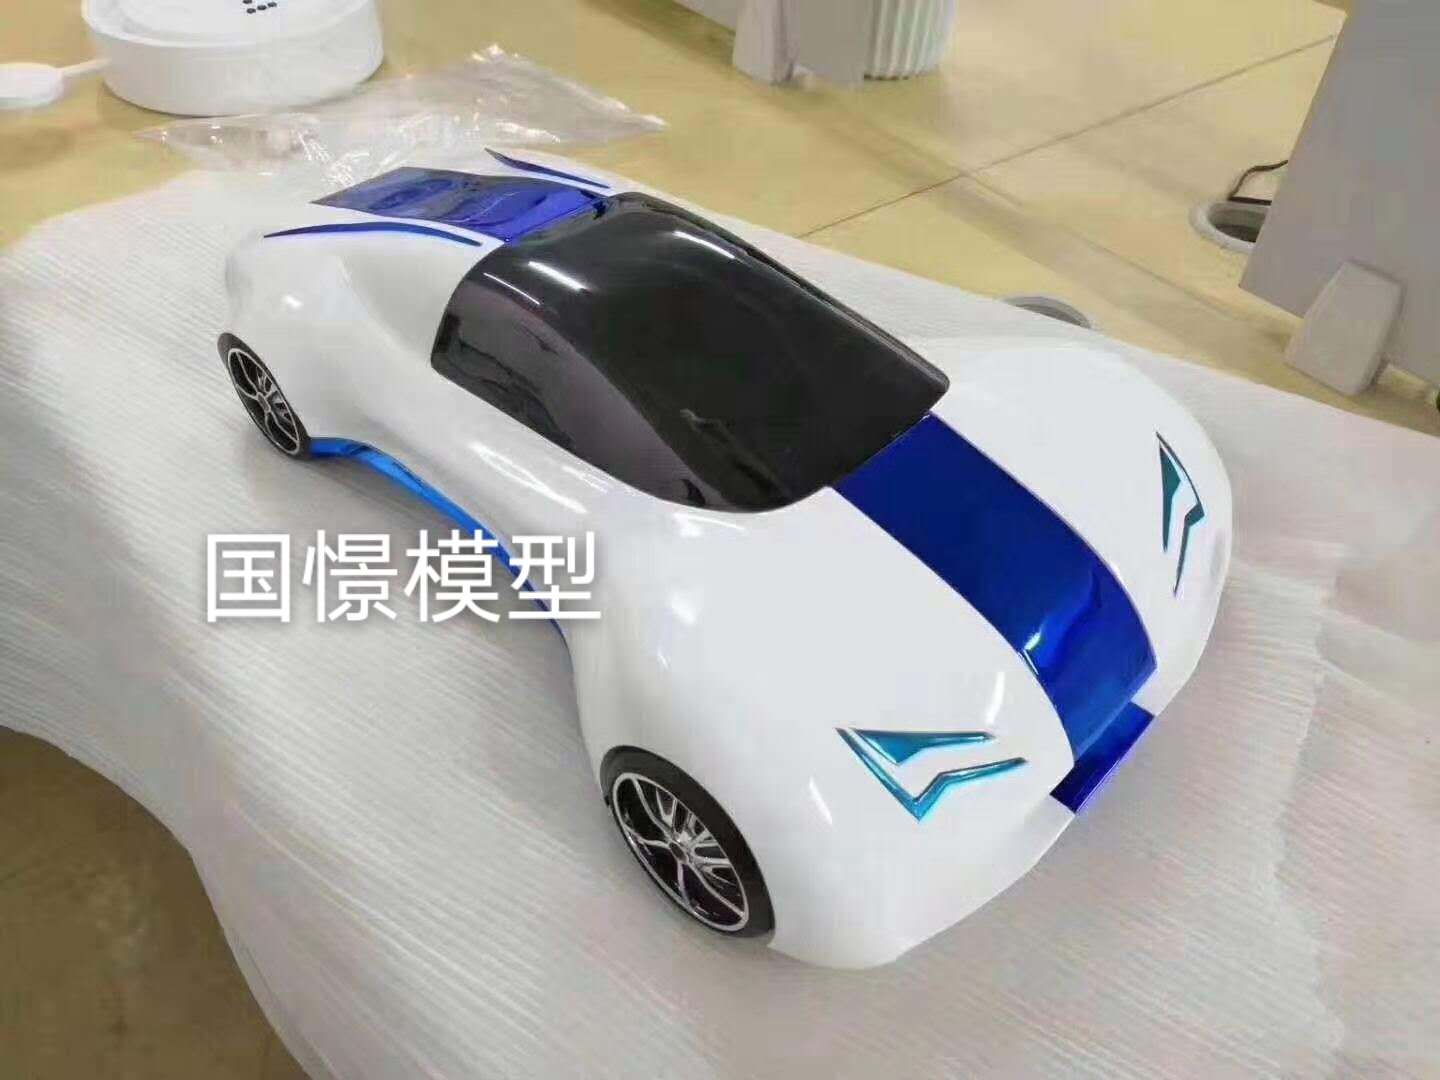 雅江县车辆模型